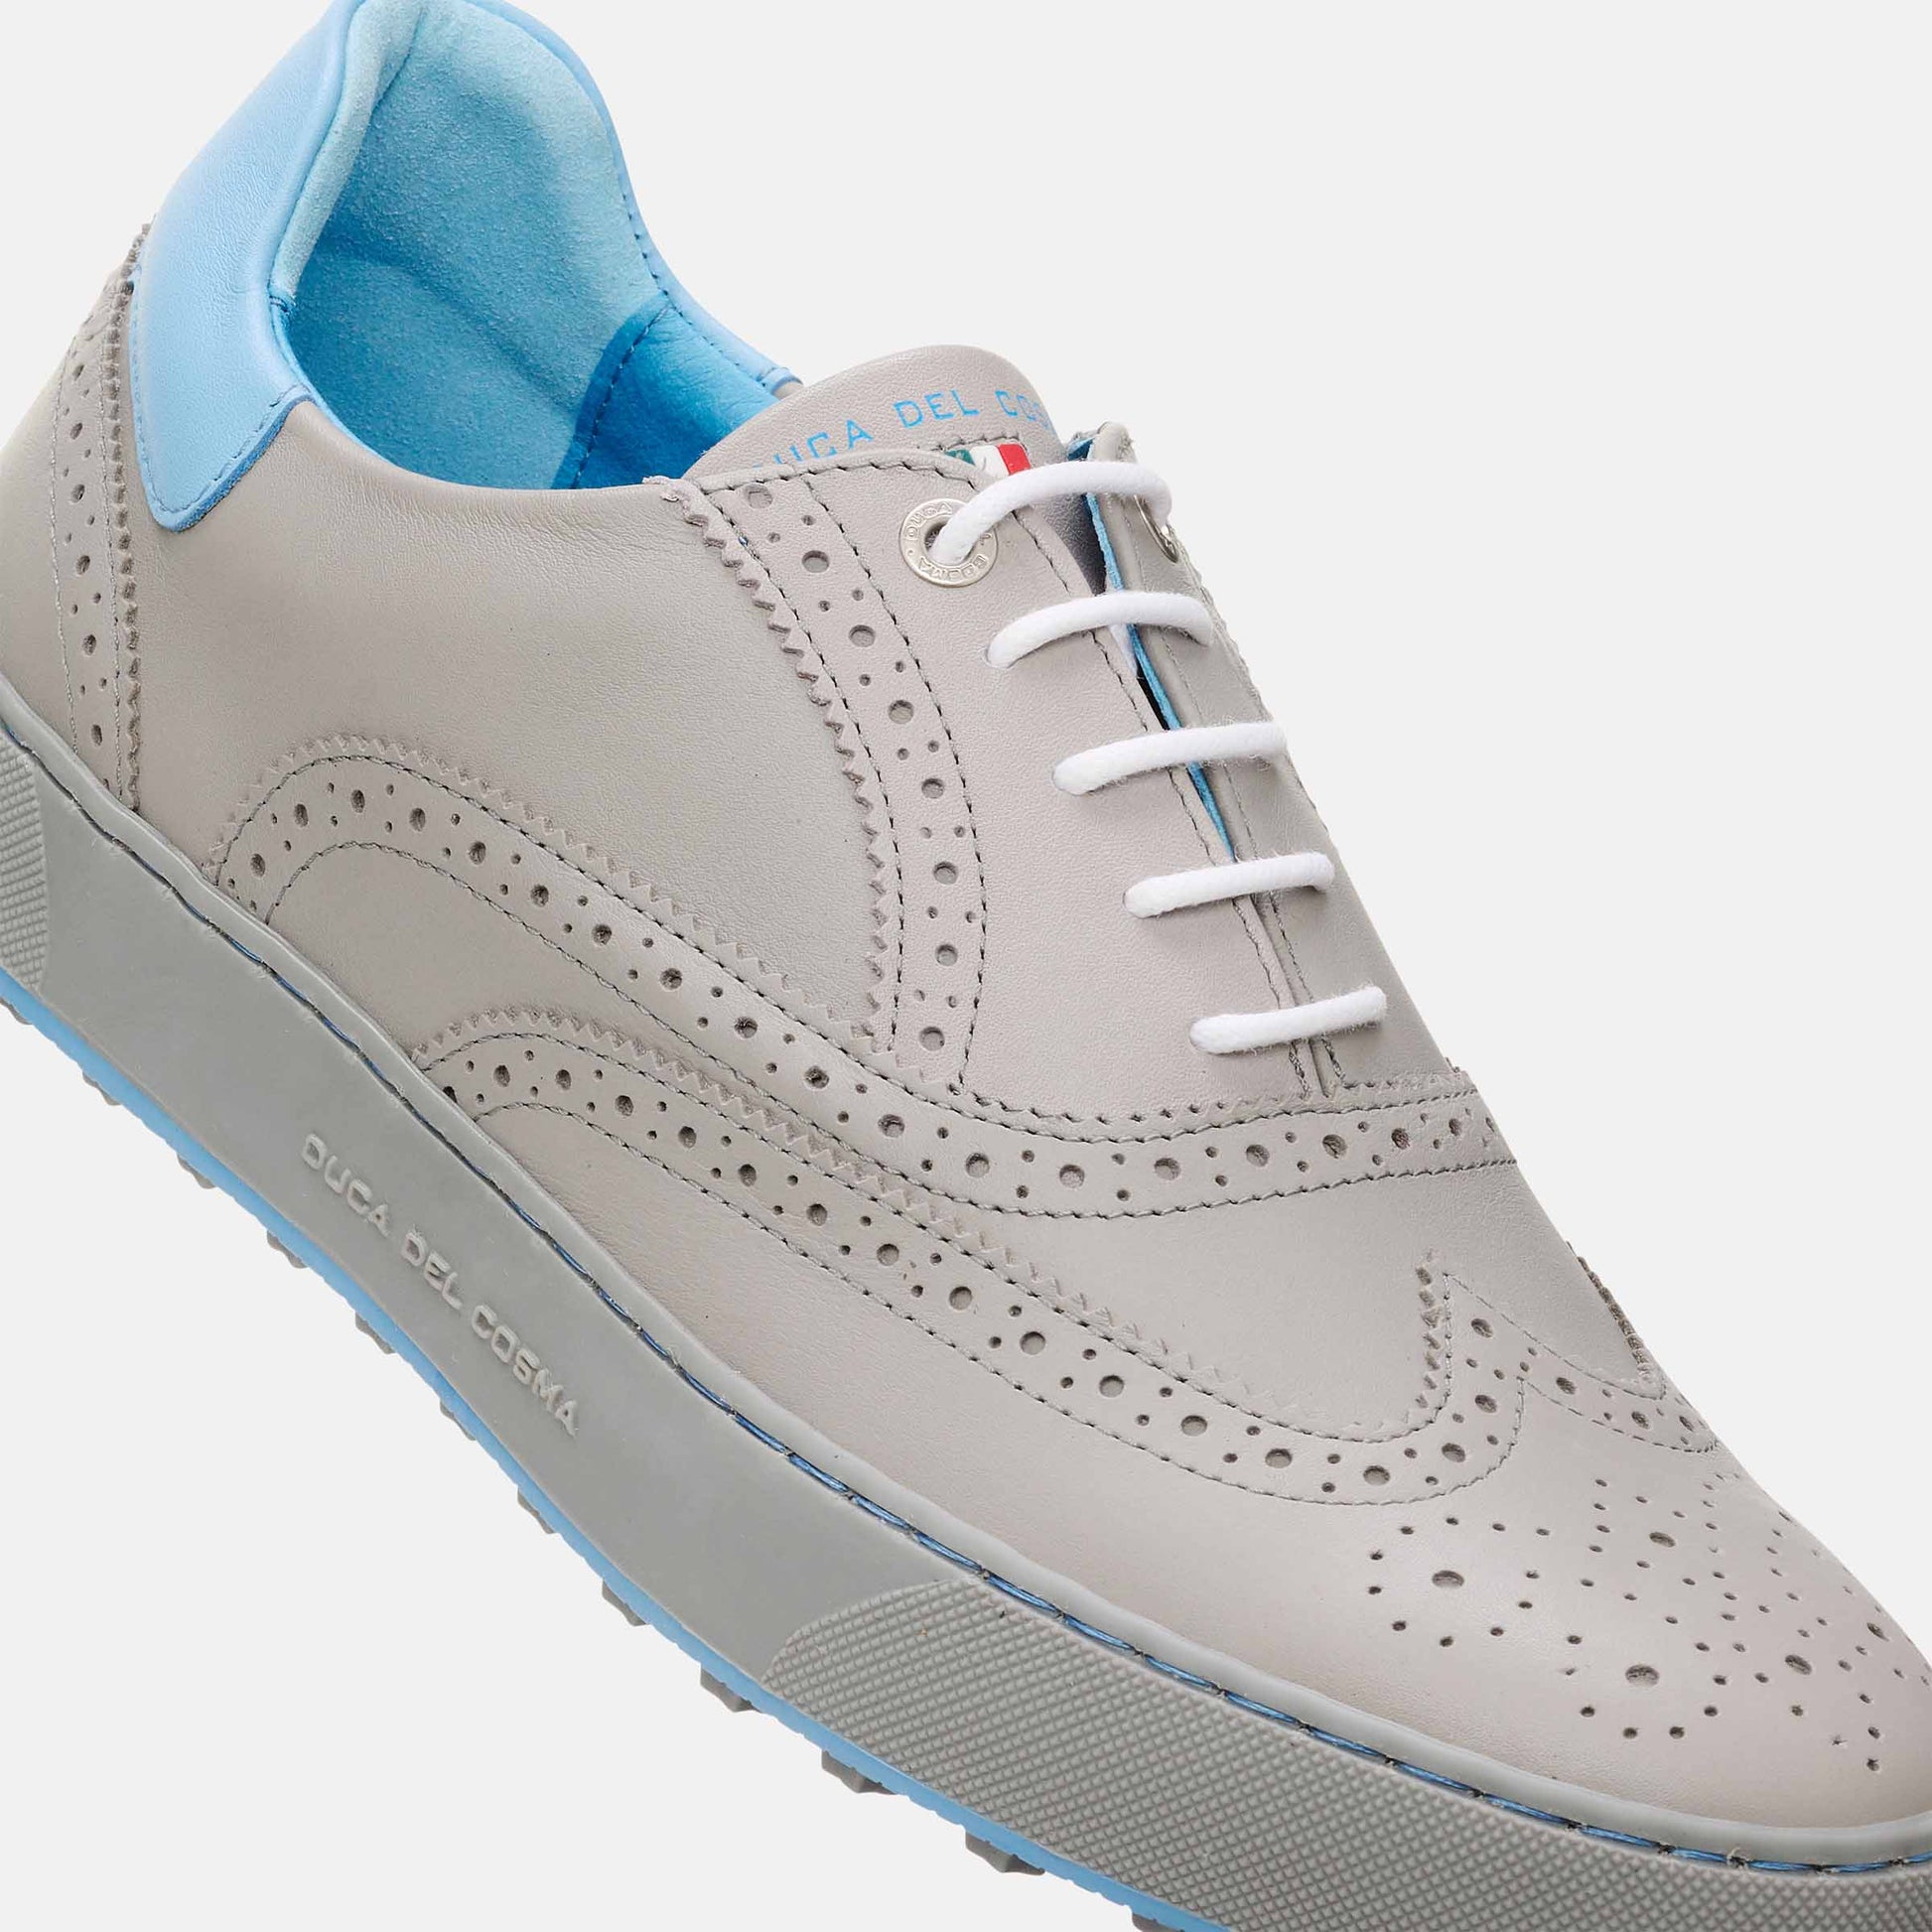 Grey Golf Shoes, Men's Golf Shoes Duca del Cosma, Spikeless Golf Shoes, Classic Golf Shoes.